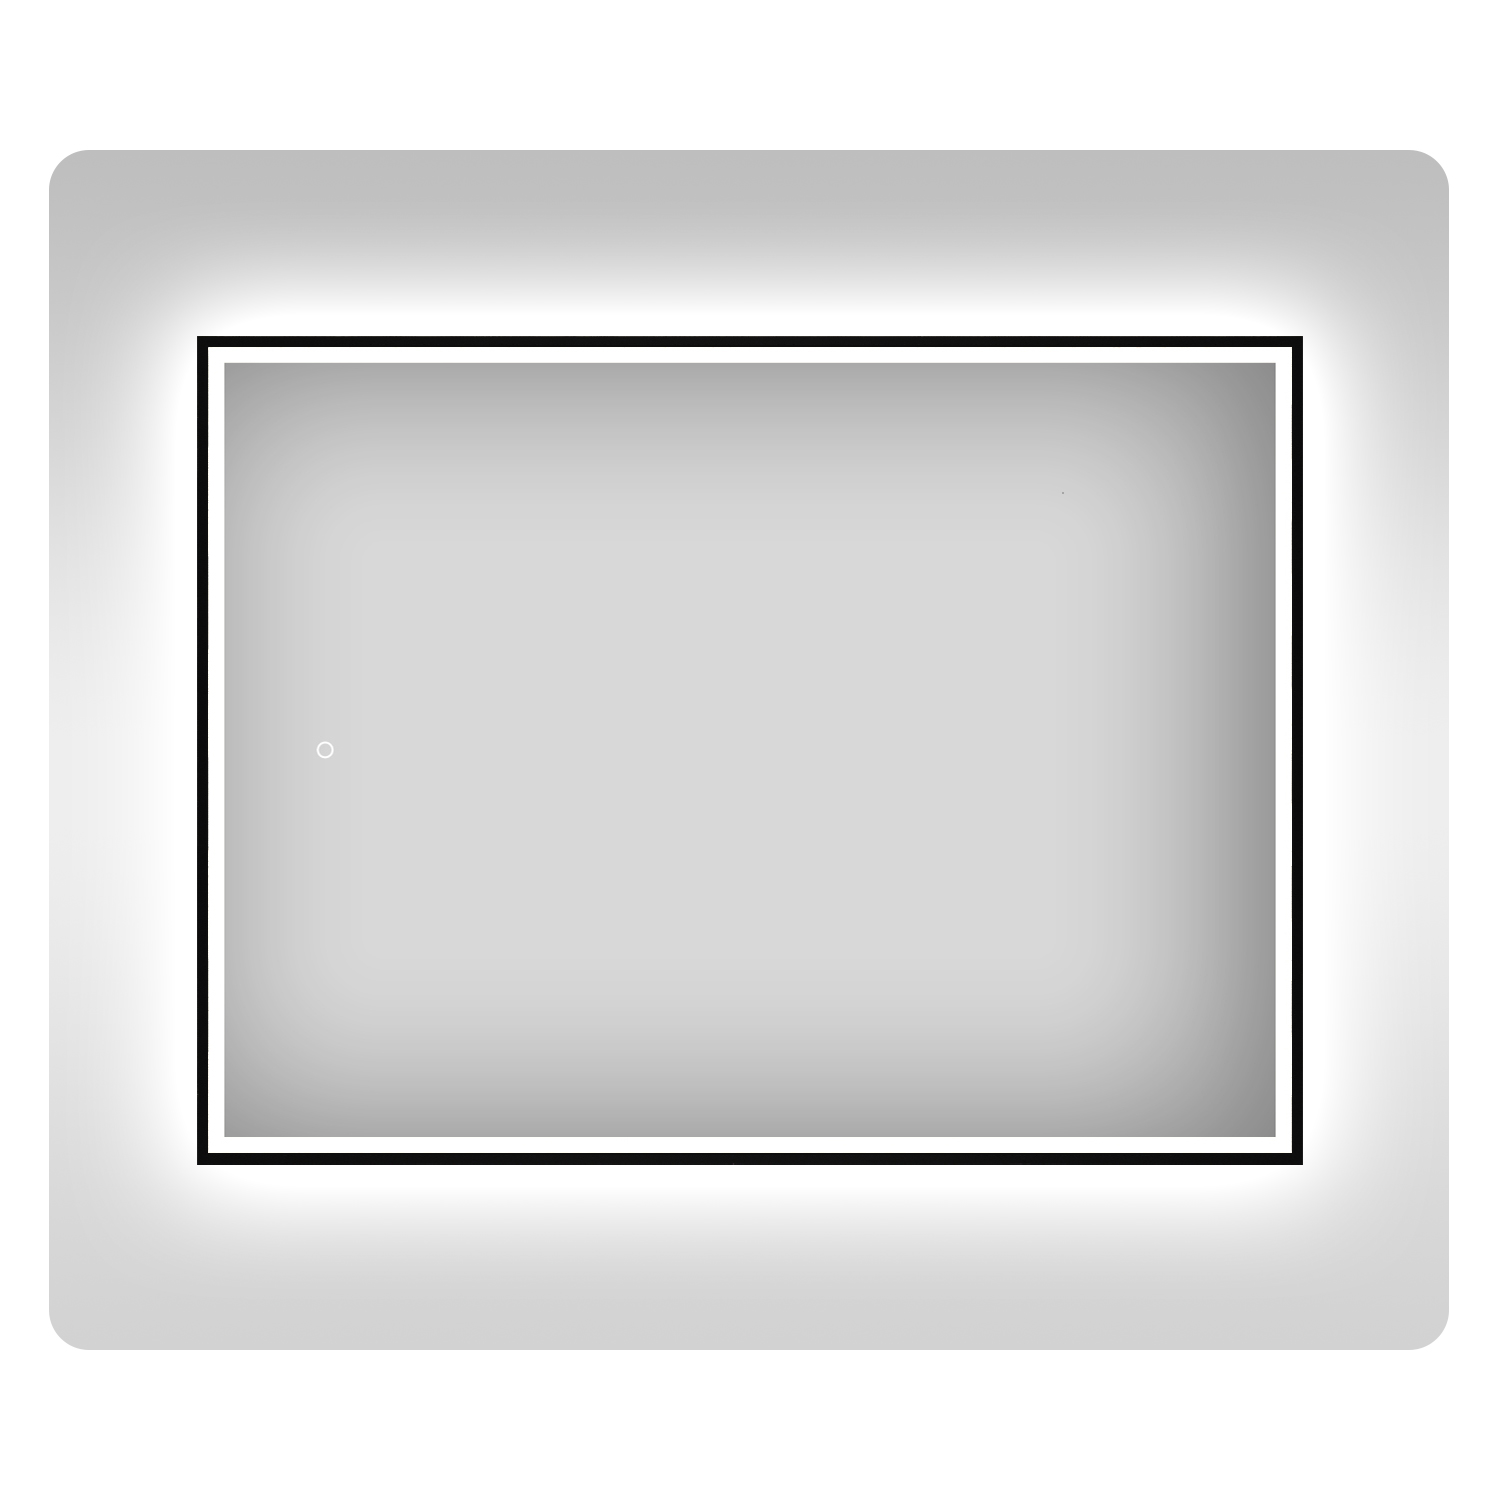 Влагостойкое зеркало с подсветкой для ванной Wellsee 7 Rays' Spectrum 172201250, 80х55 см зеркало mixline эльза 80х55 сенсор подсветка с увеличением 4630104801423